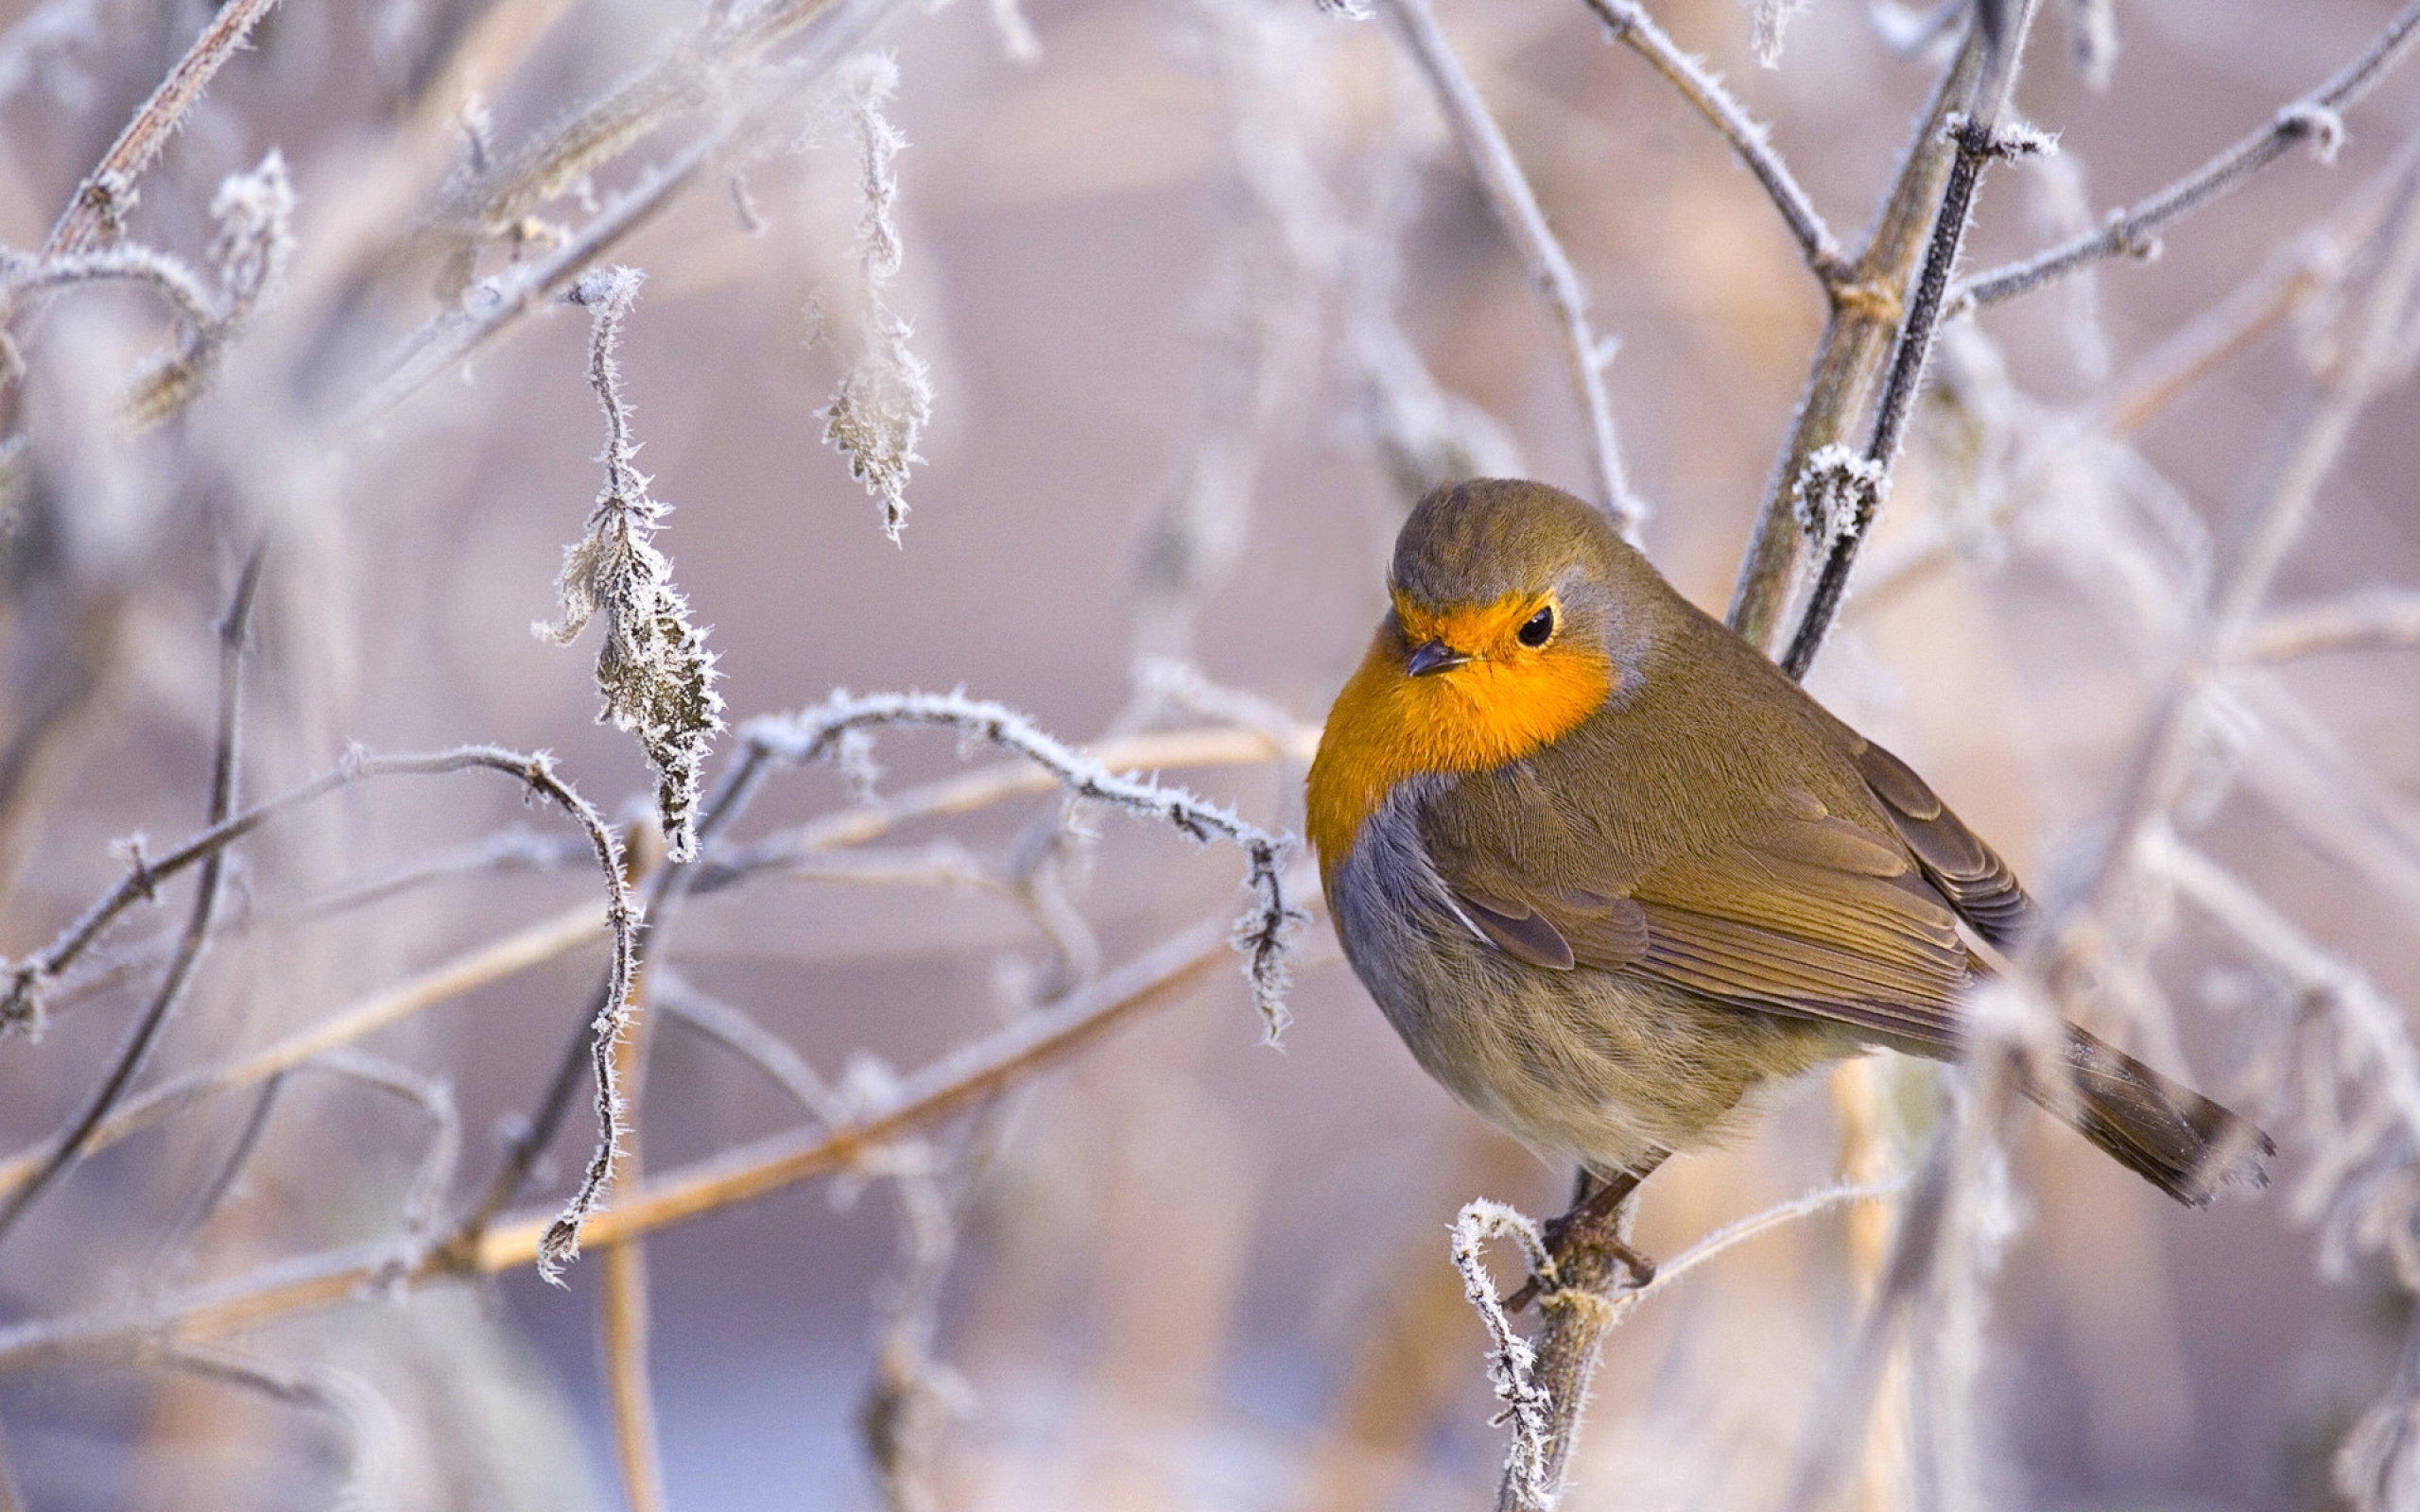 В феврале вы можете услышать пение напоминающее. Зарянка, Щур. Зима птицы. Зимняя птичка с желтой грудкой. Птички на ветке зимой.